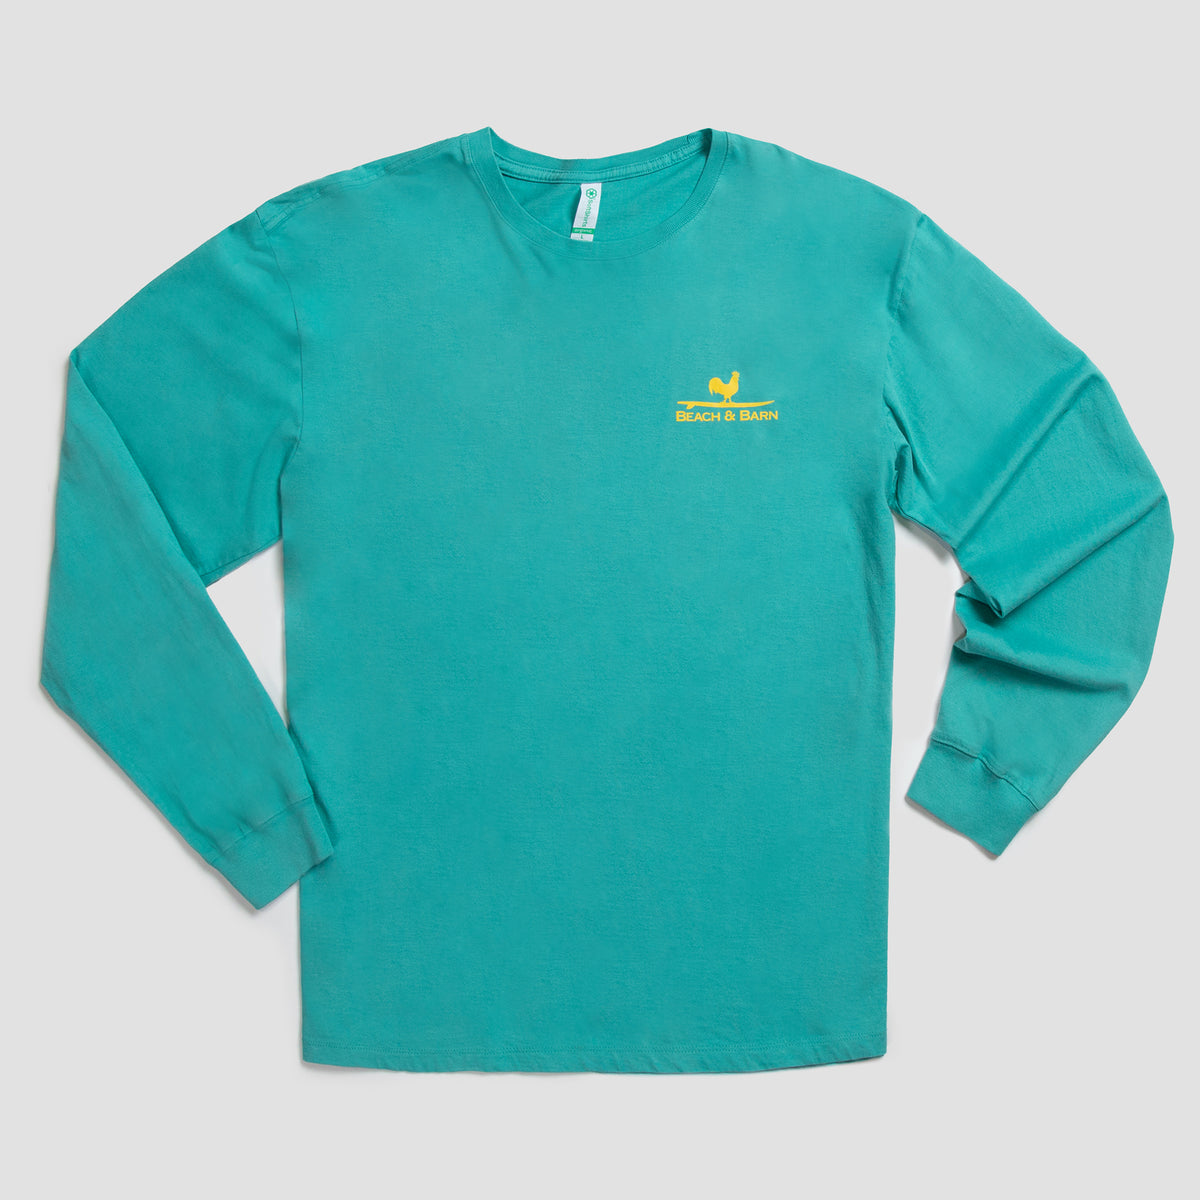 Sale - Farm Fin Long Sleeve Tee Shirt